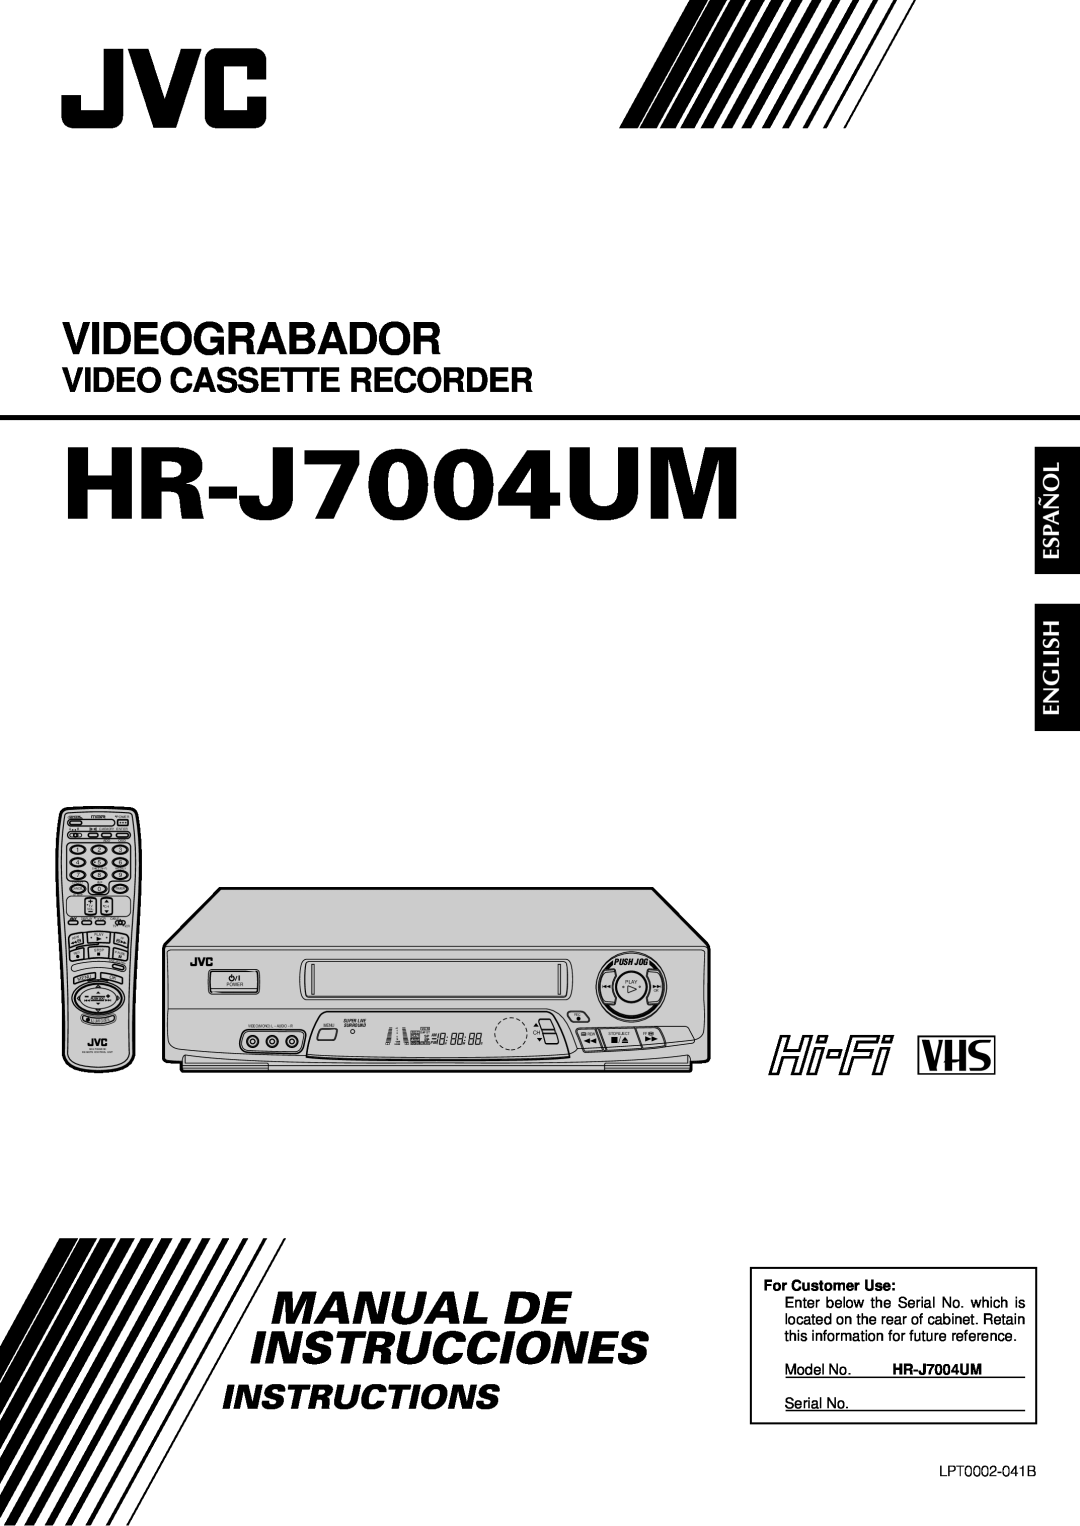 JVC HR-J7004UM manual Videograbador, Manual De Instrucciones, Video Cassette Recorder, Instructions, English Español, Play 